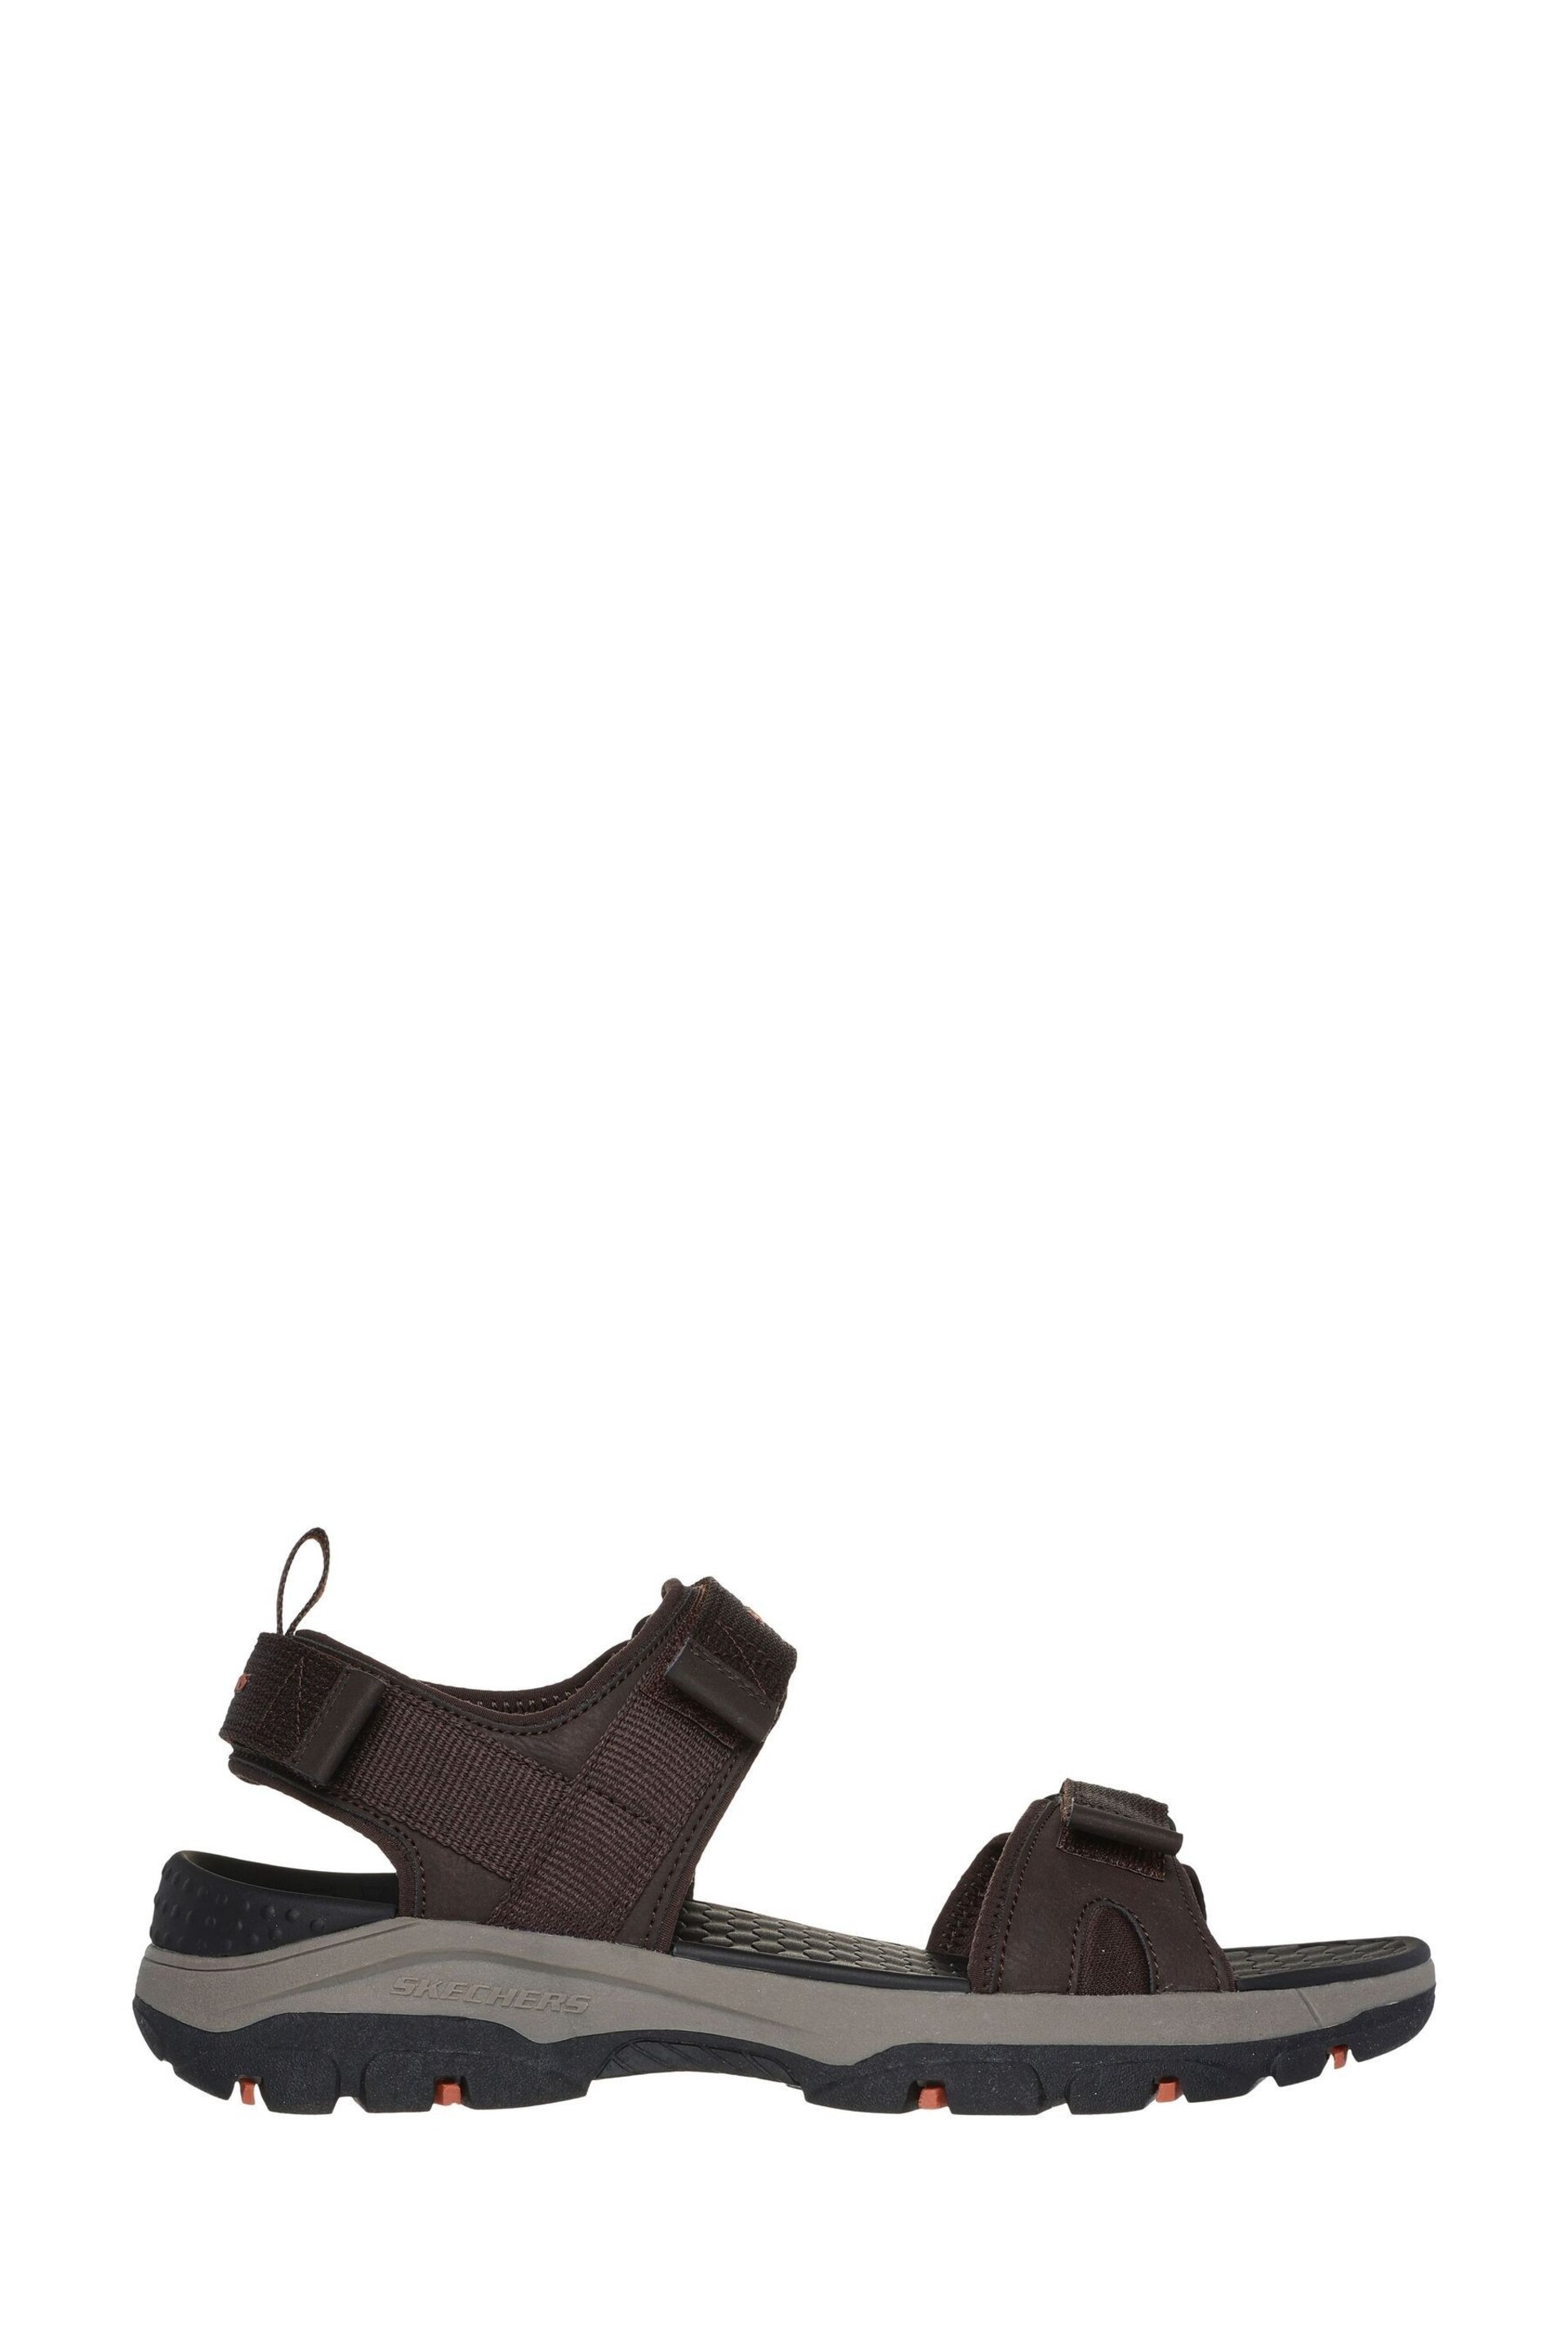 Skechers Brown Tresmen Ryer Sandals - Image 1 of 5